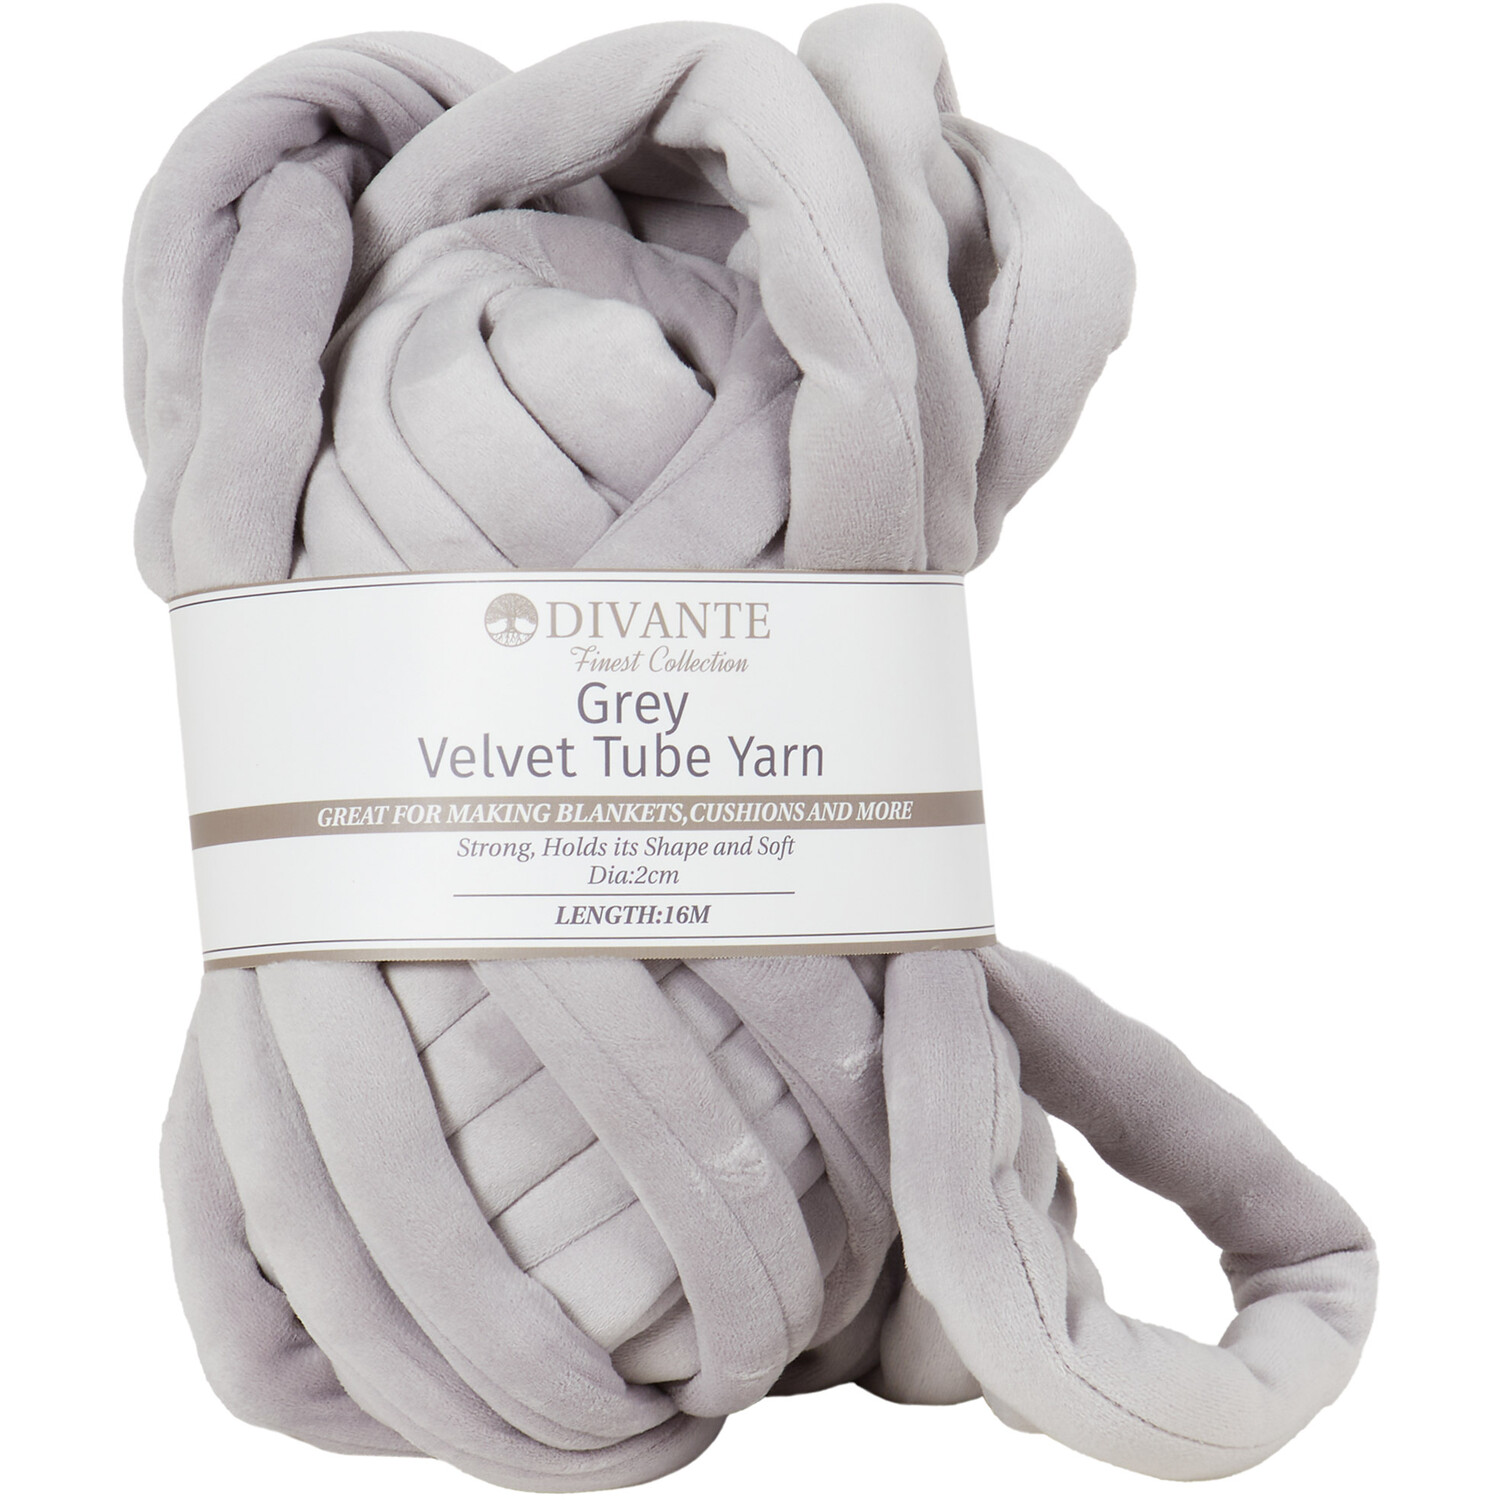 Divante Velvet Tube Yarn - Grey Image 1